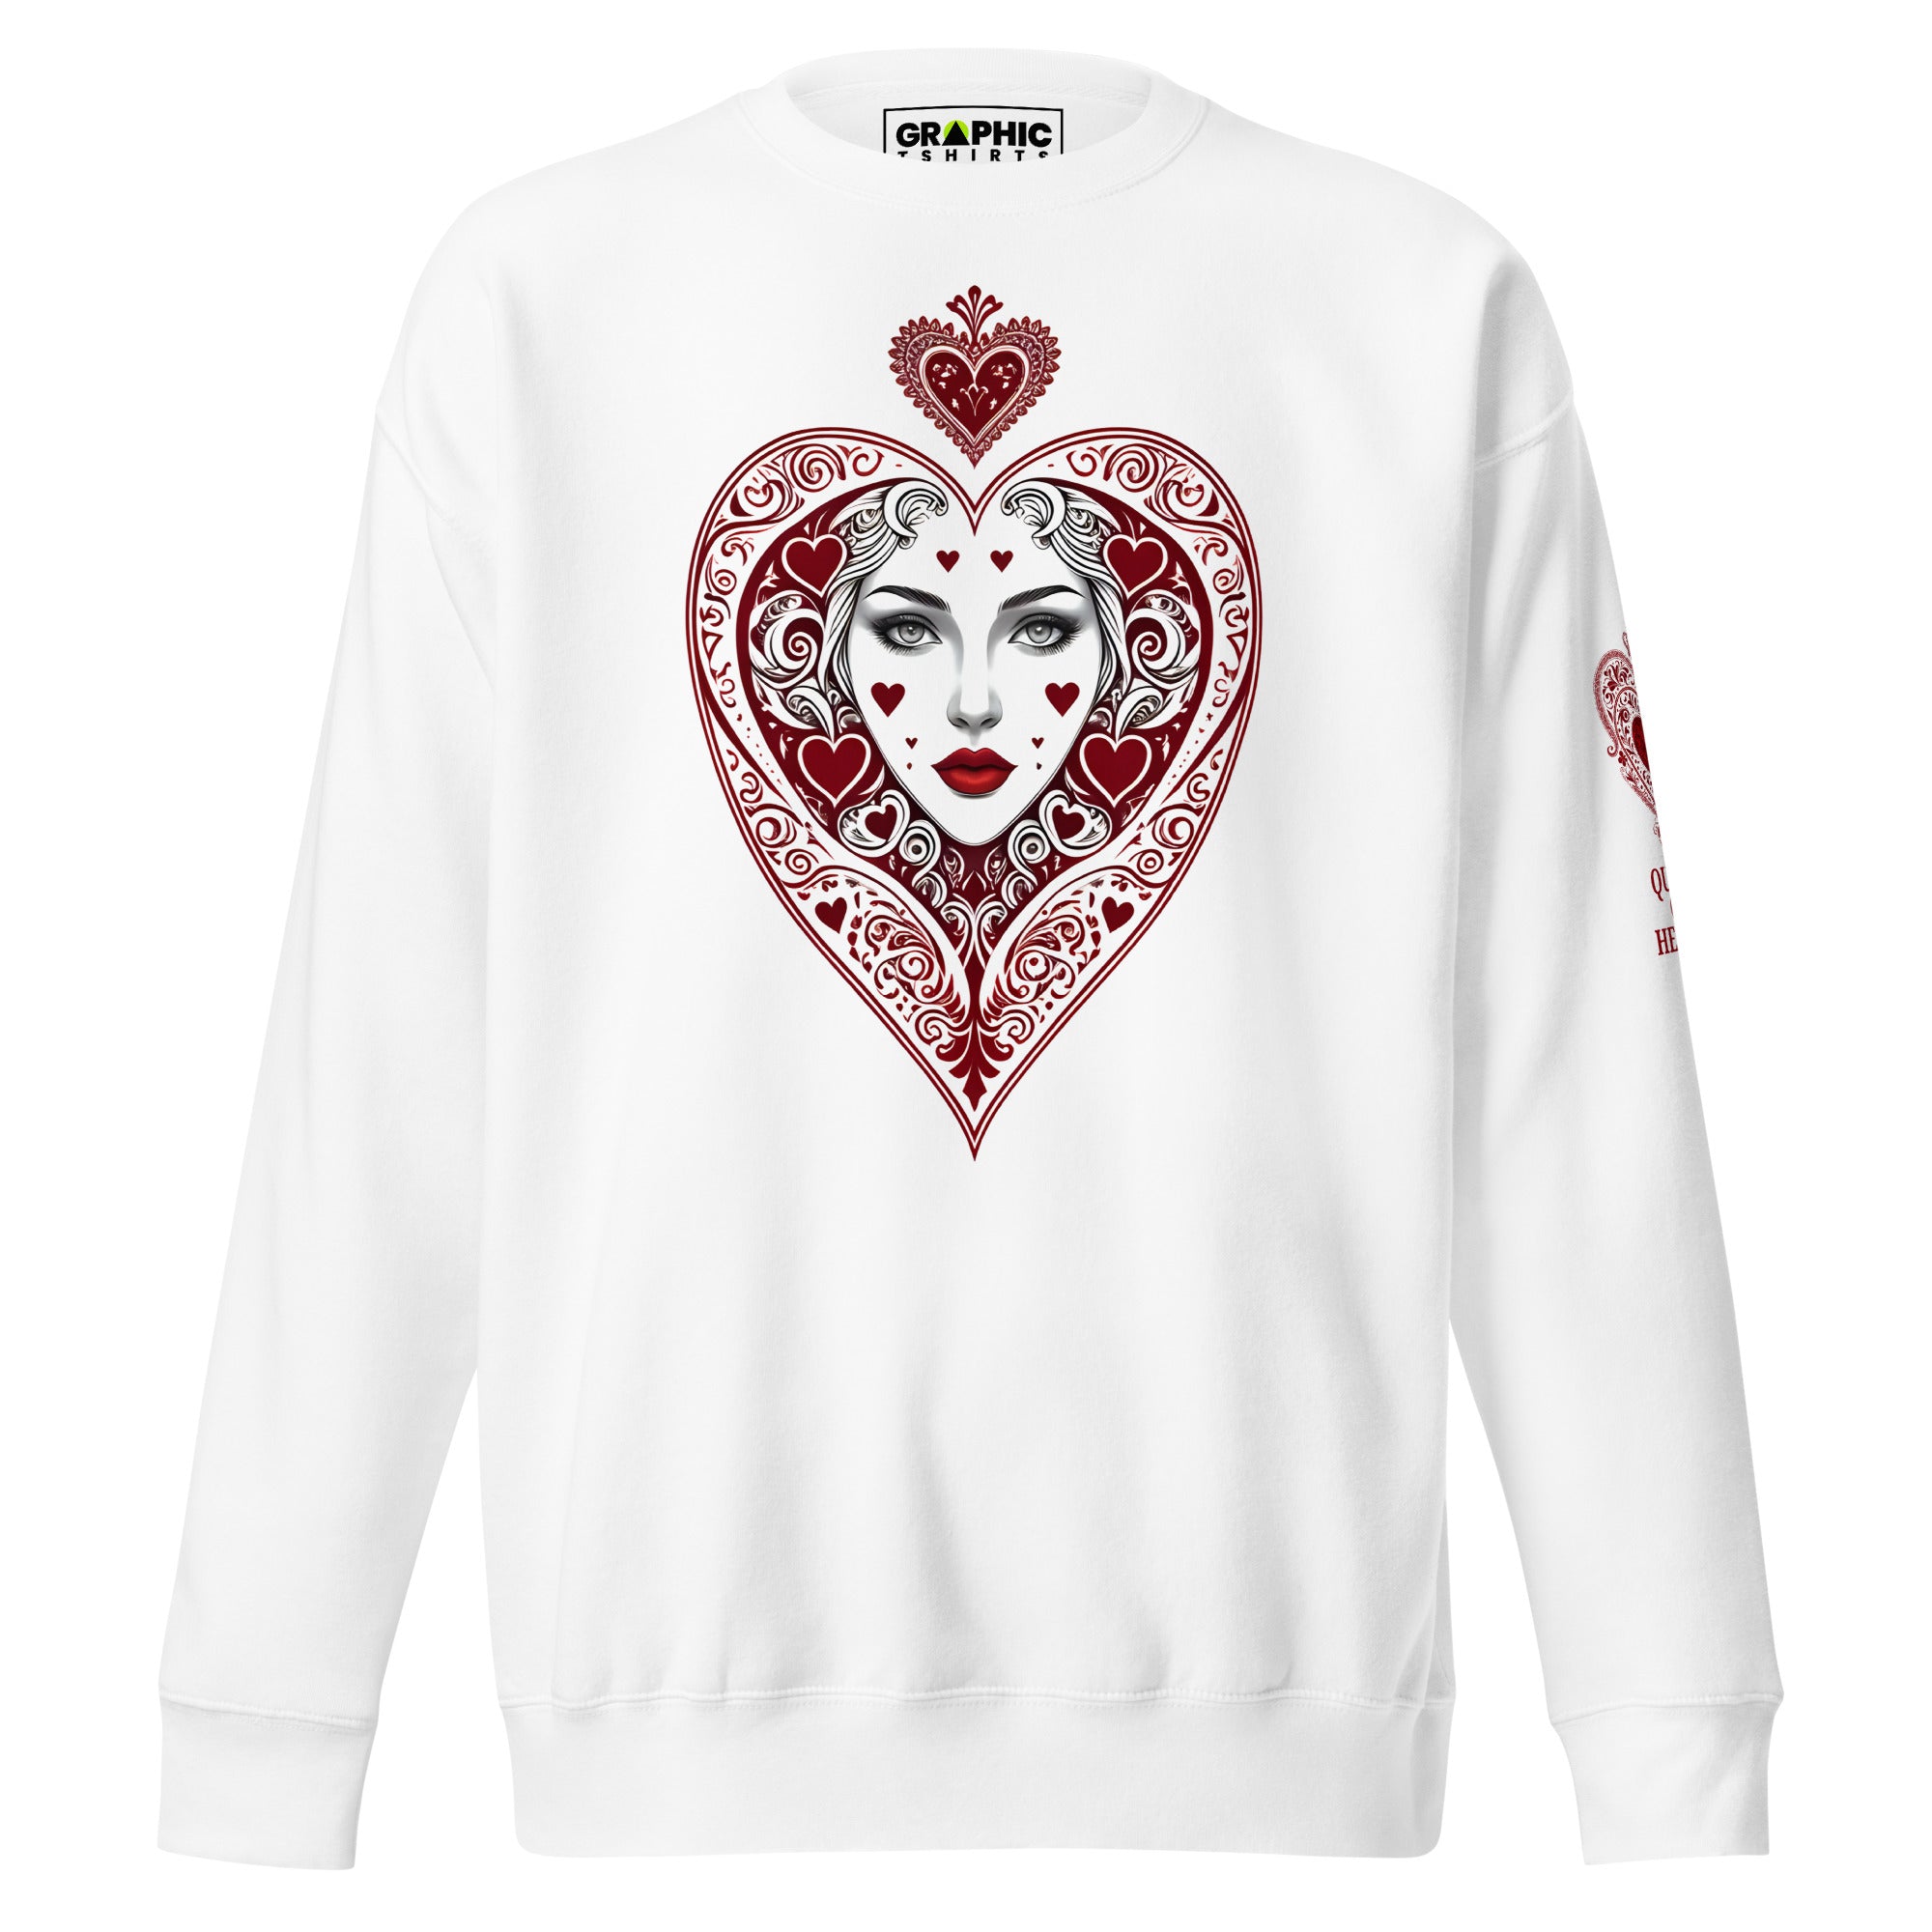 Unisex Premium Sweatshirt - Queen Of Hearts Series v.10